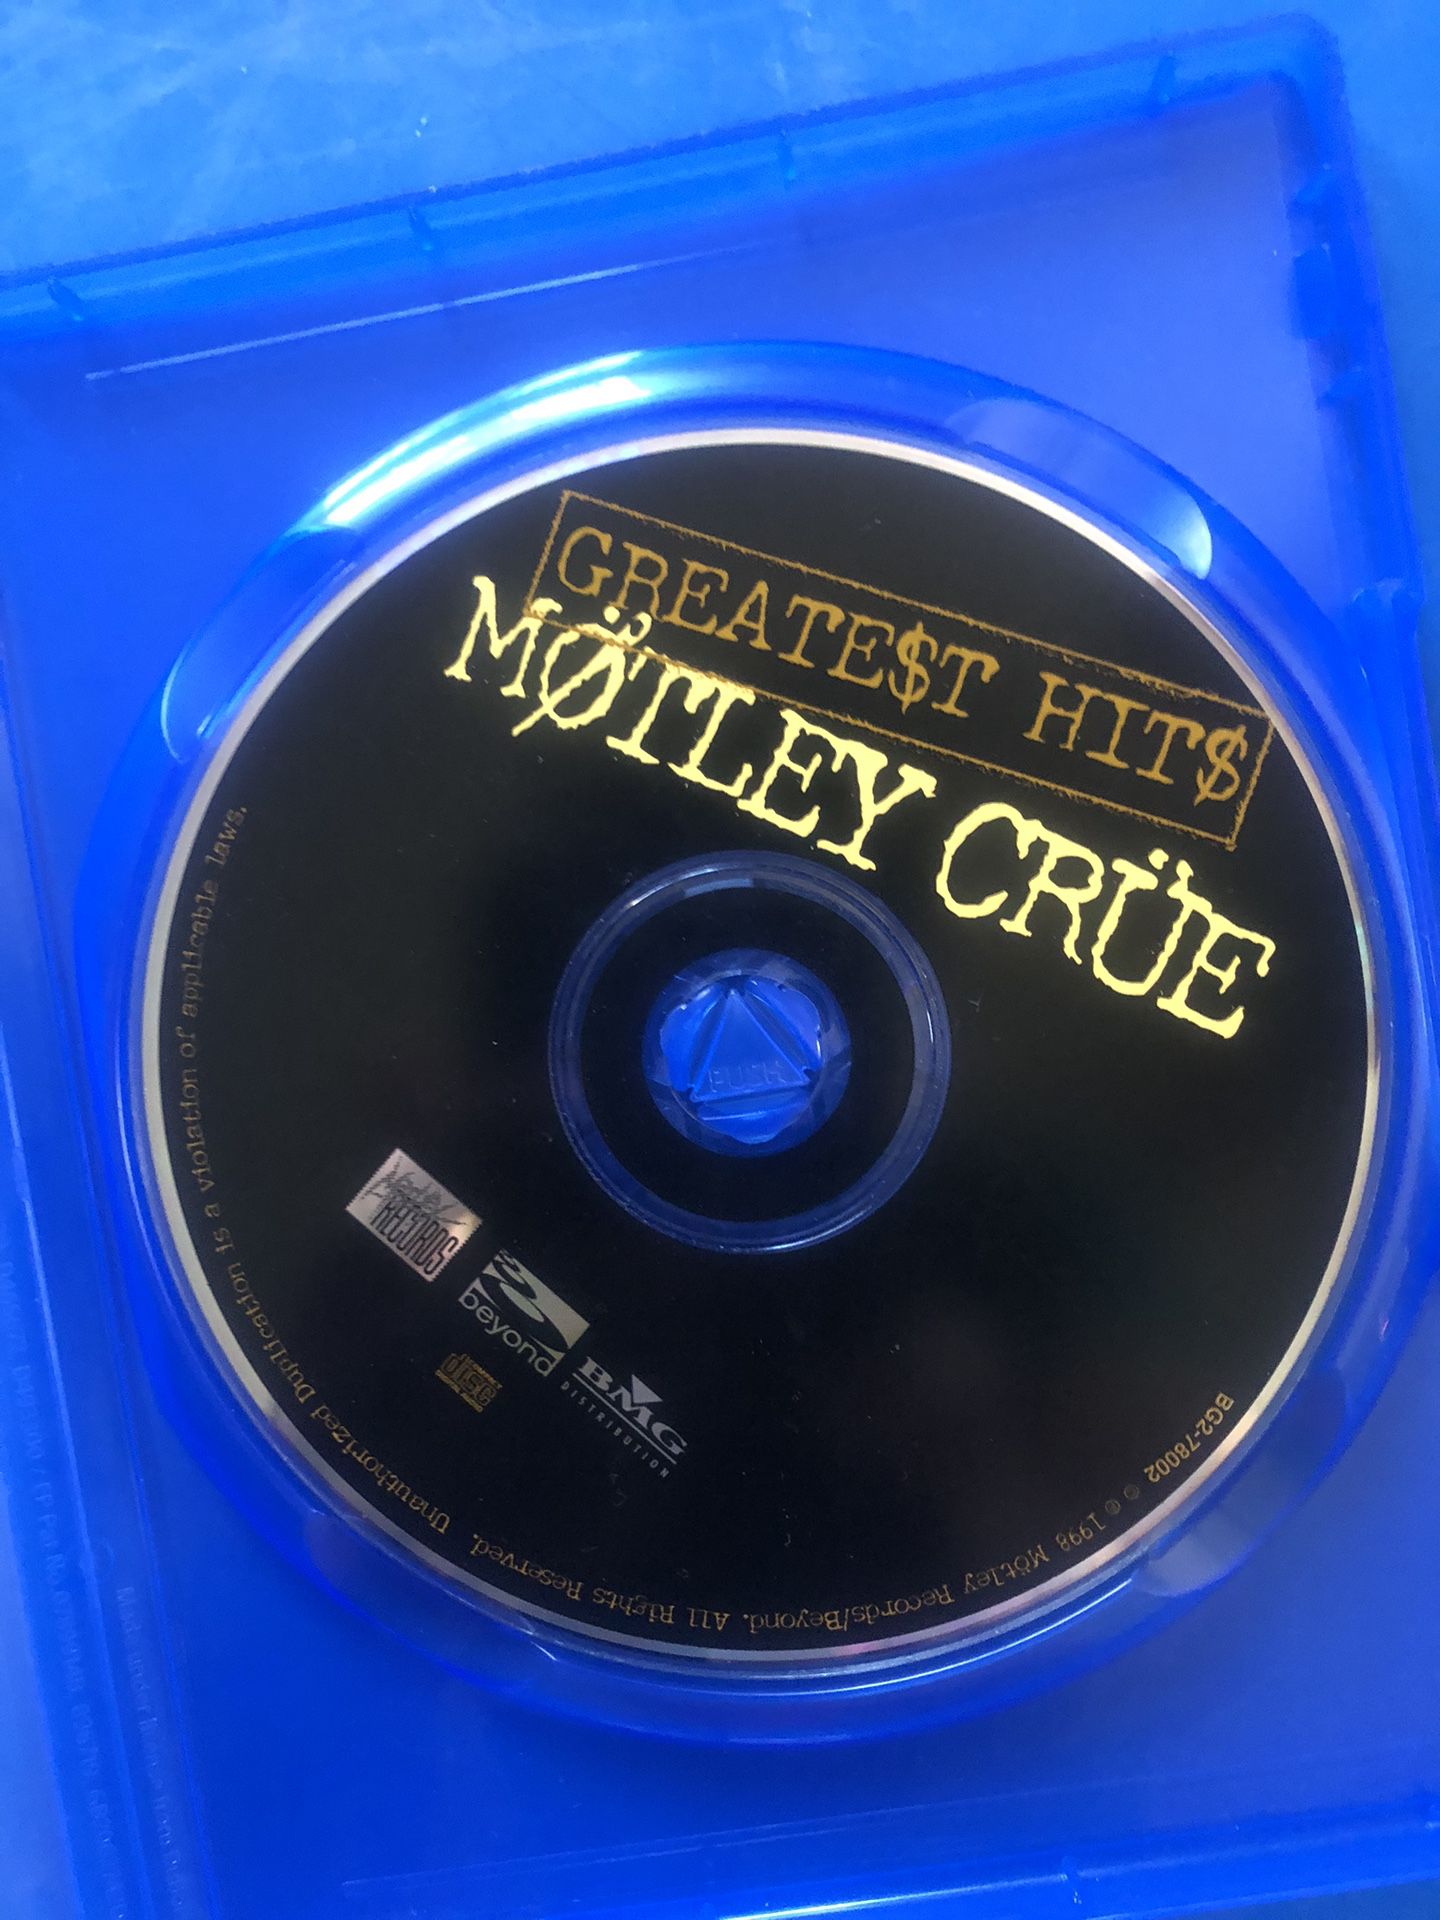 Motley Crue CD